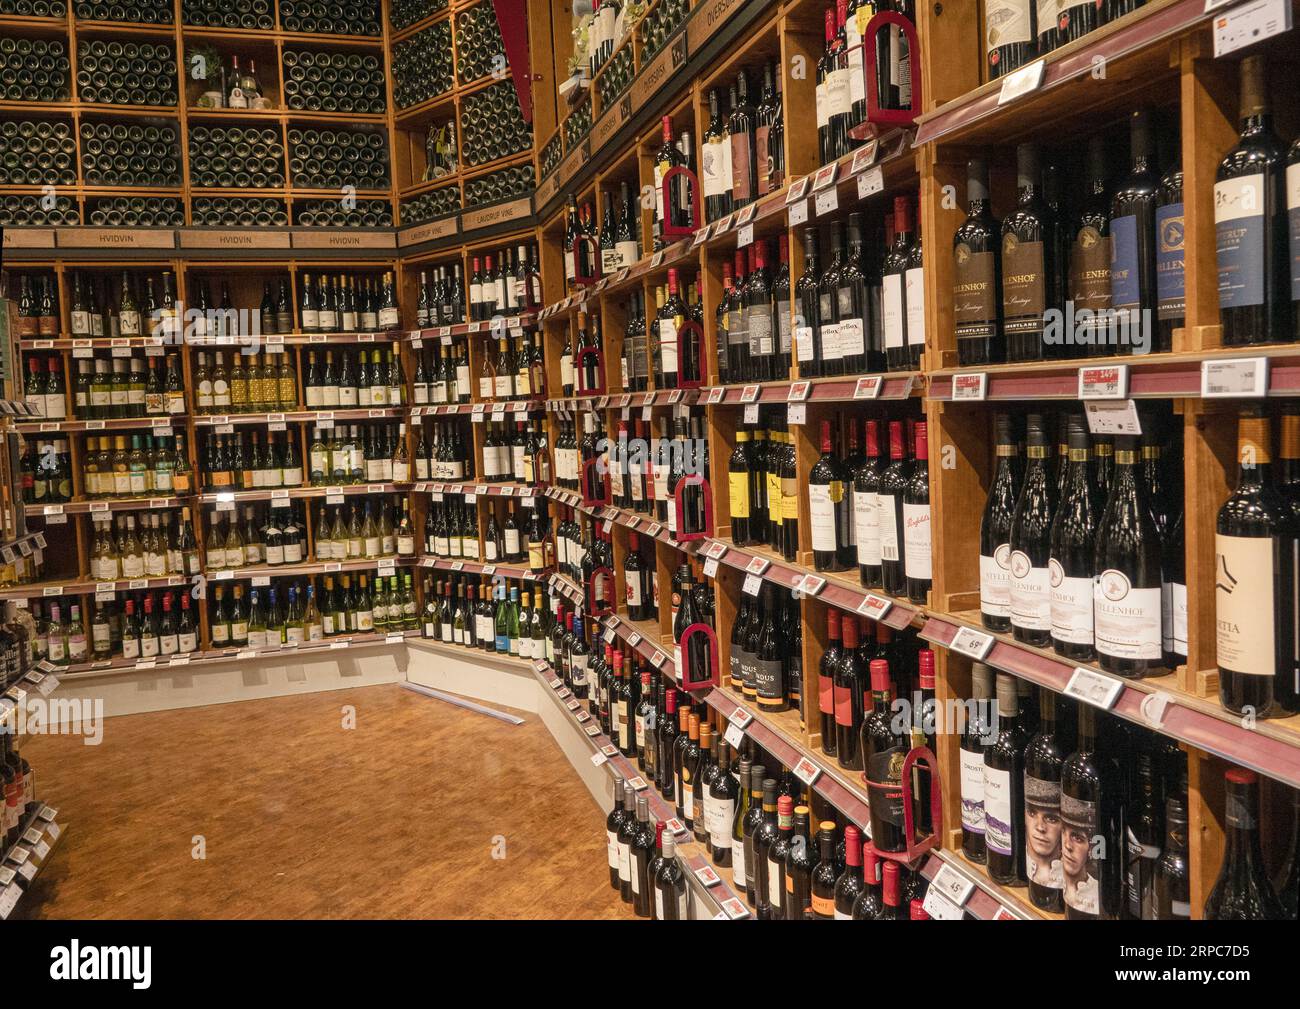 Rack with various bottles of wines on shelves in a wine shop. Copenhagen, Denmark - September 2, 2023. Stock Photo